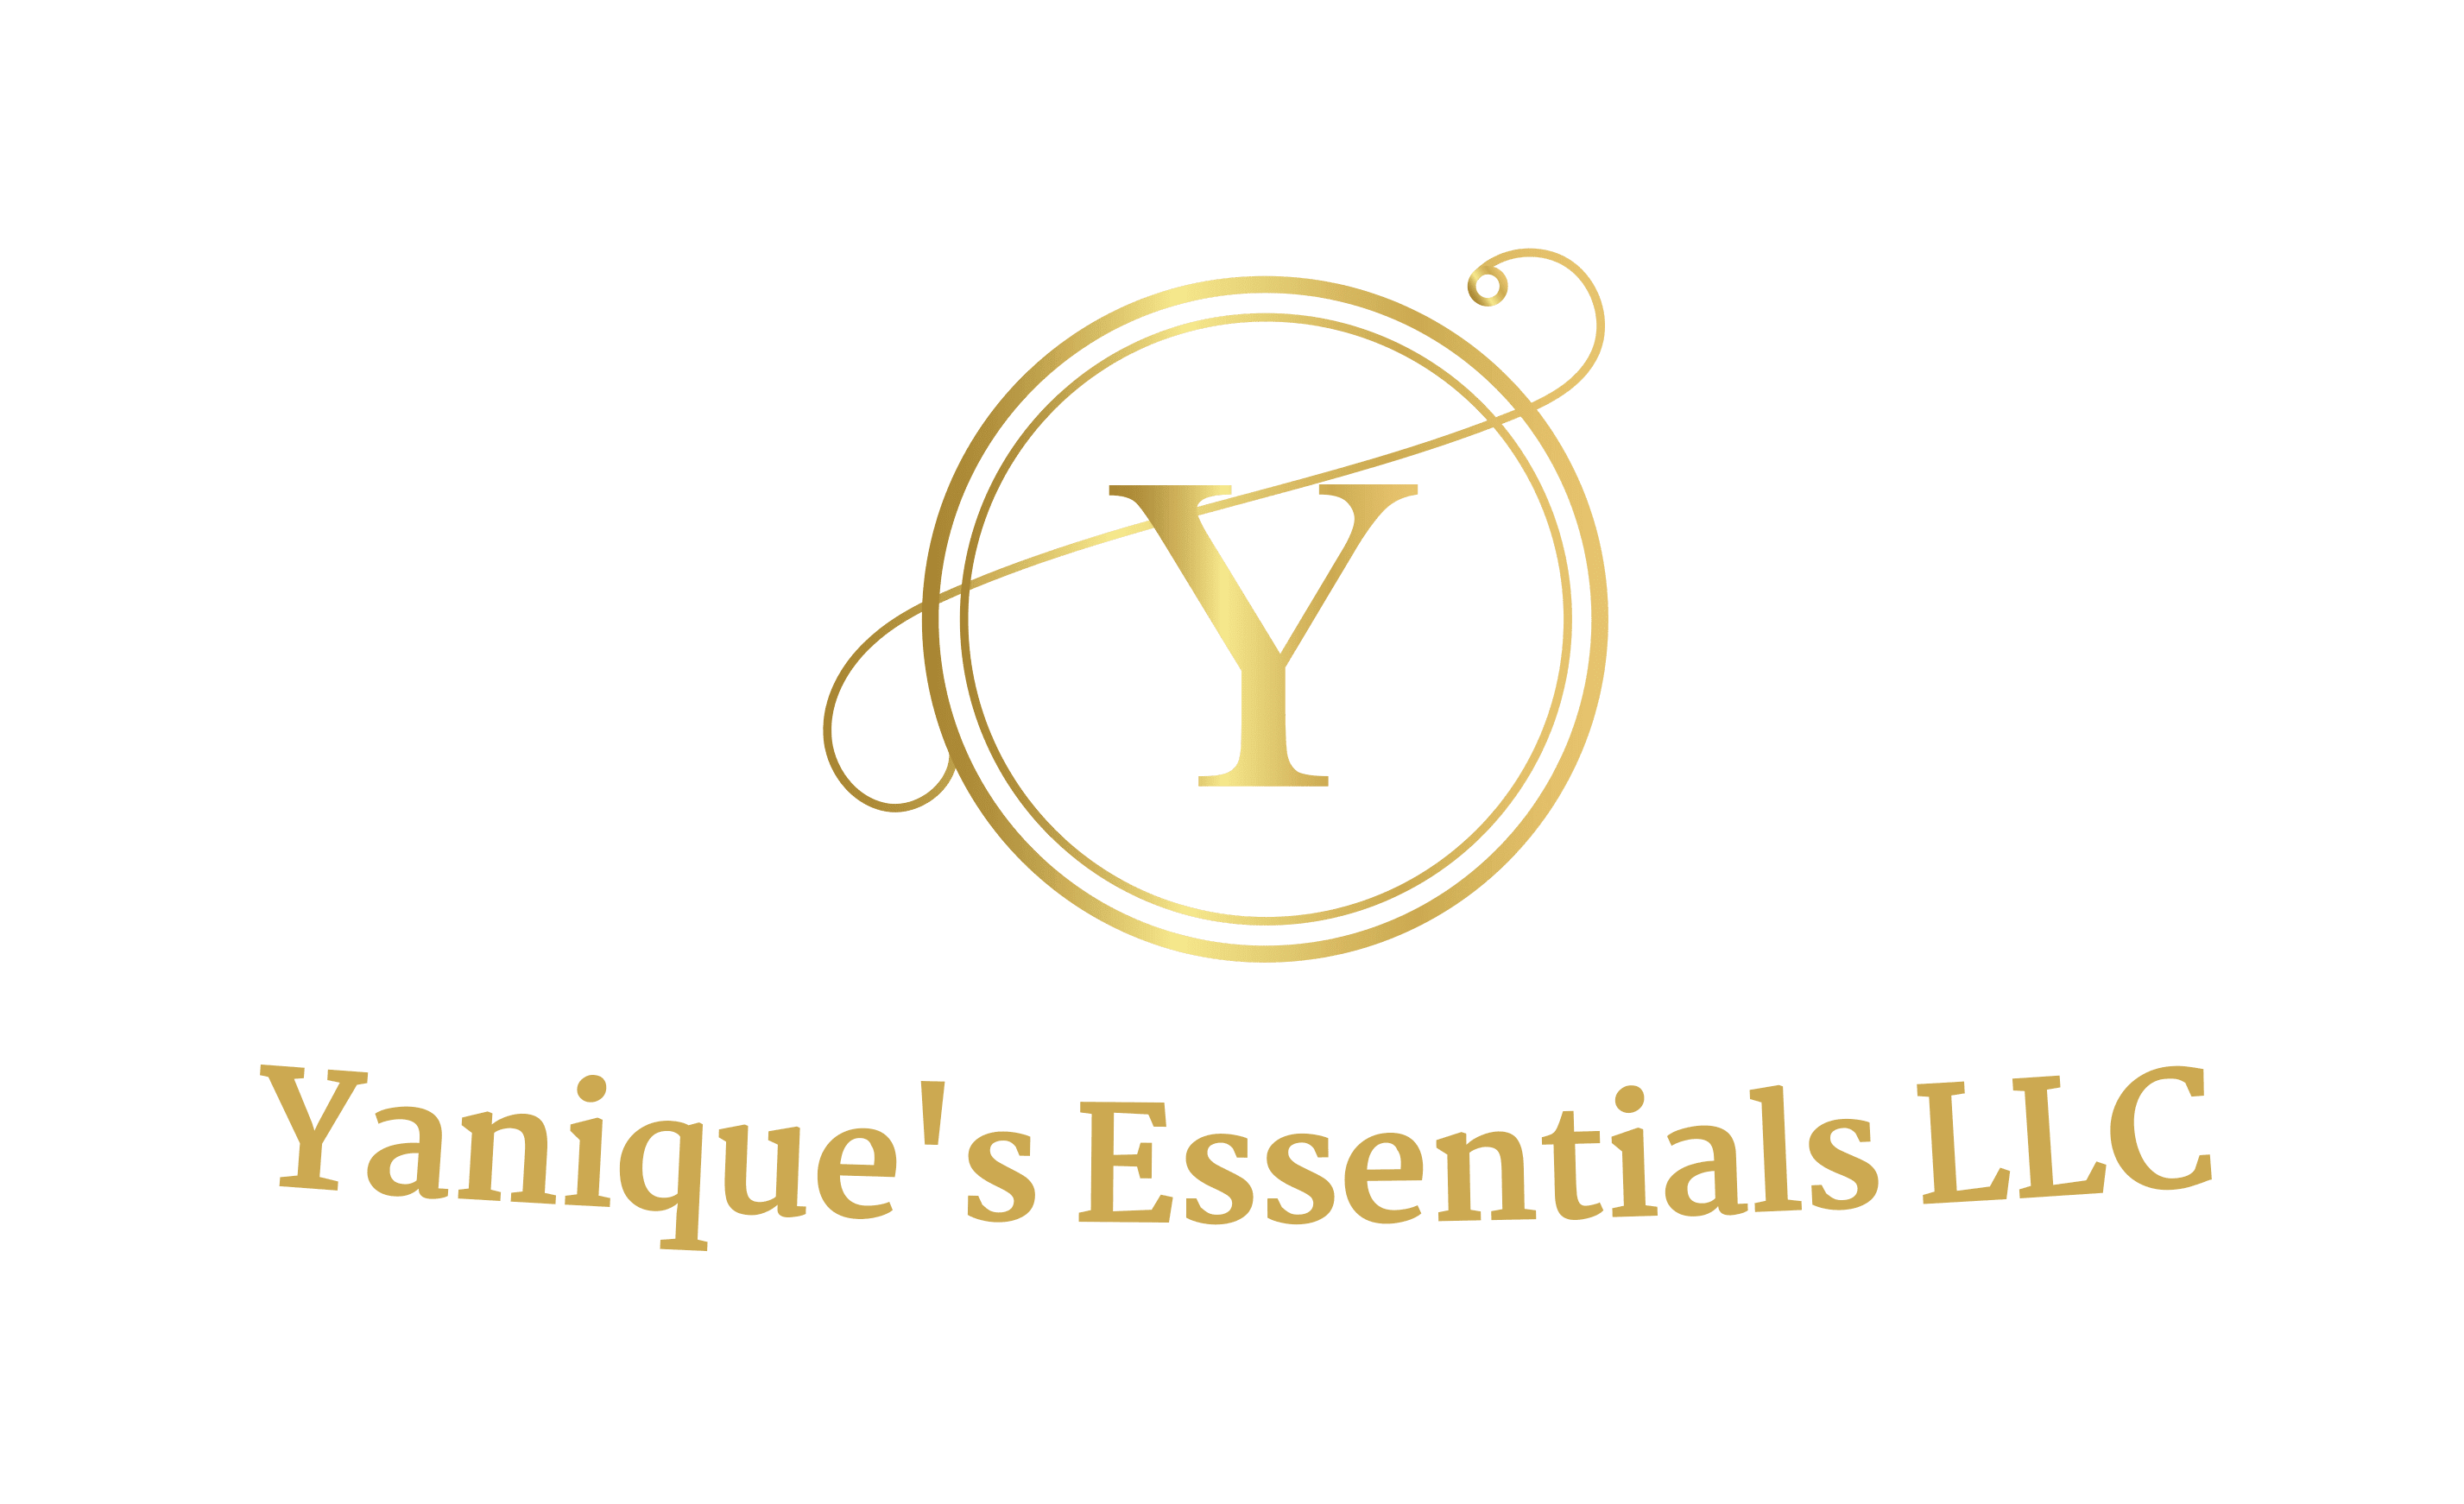 Yanique's Essentials LLC